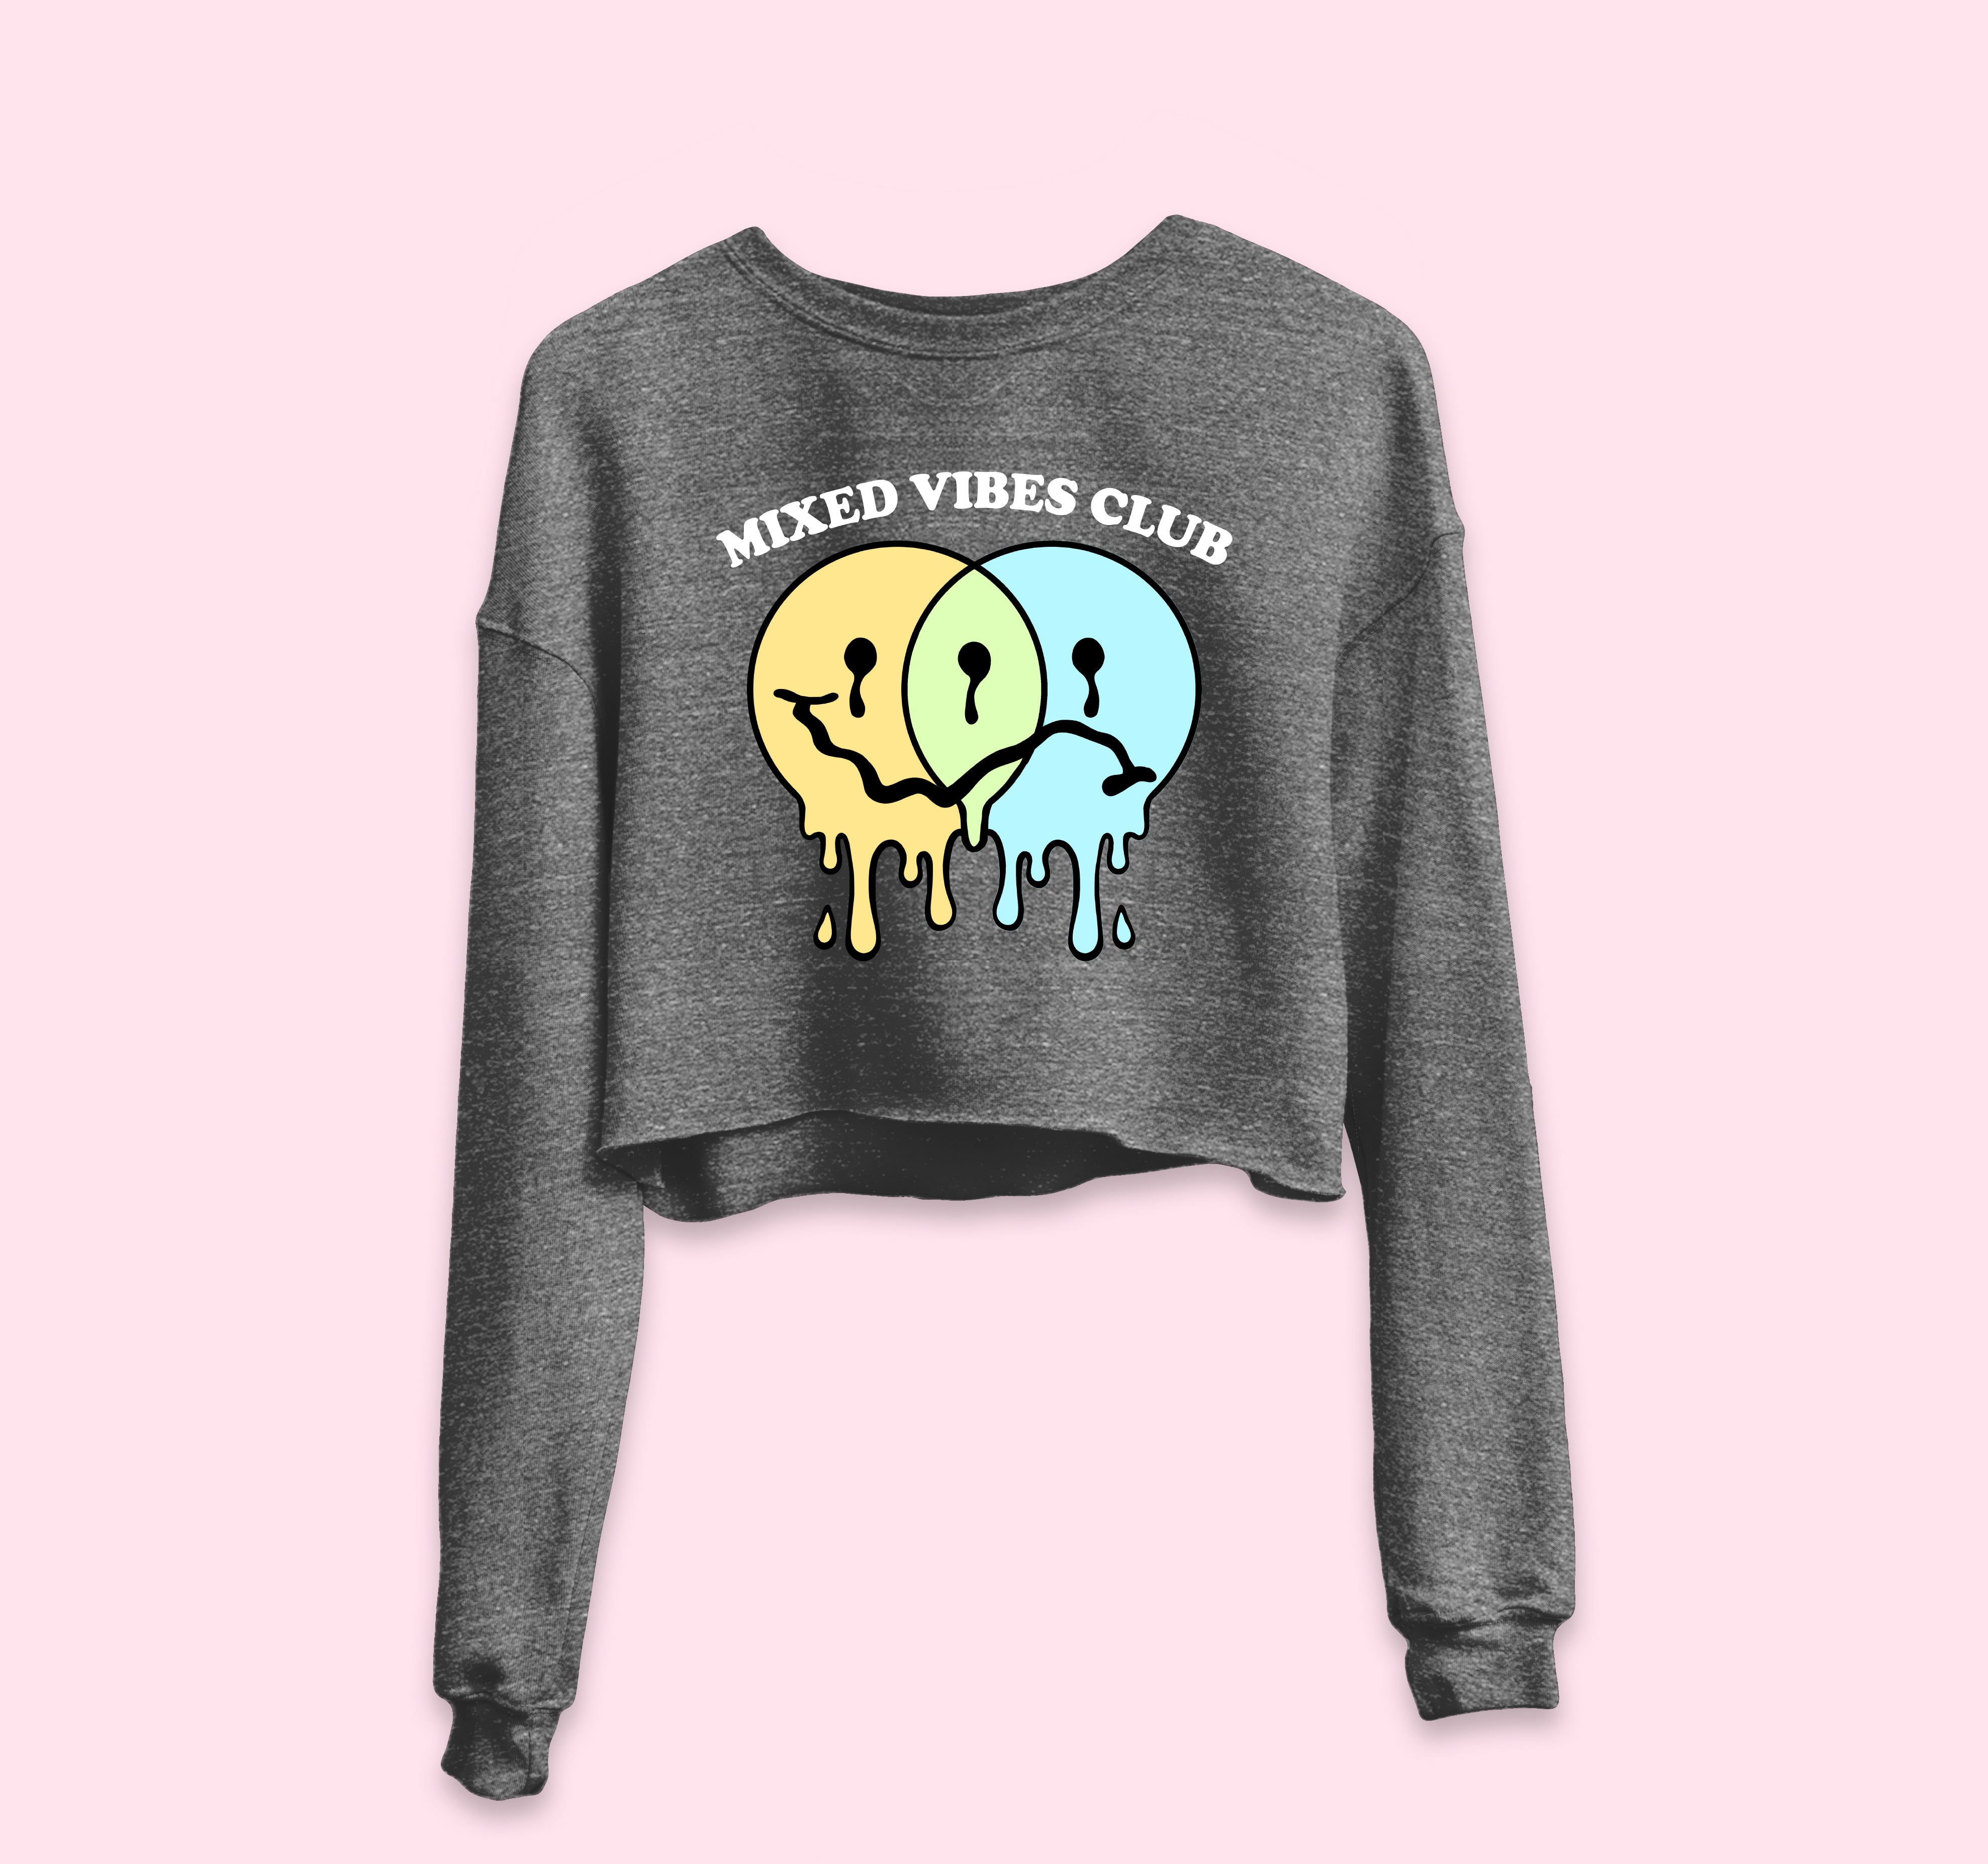 Mixed Vibes Club Crop Sweatshirt